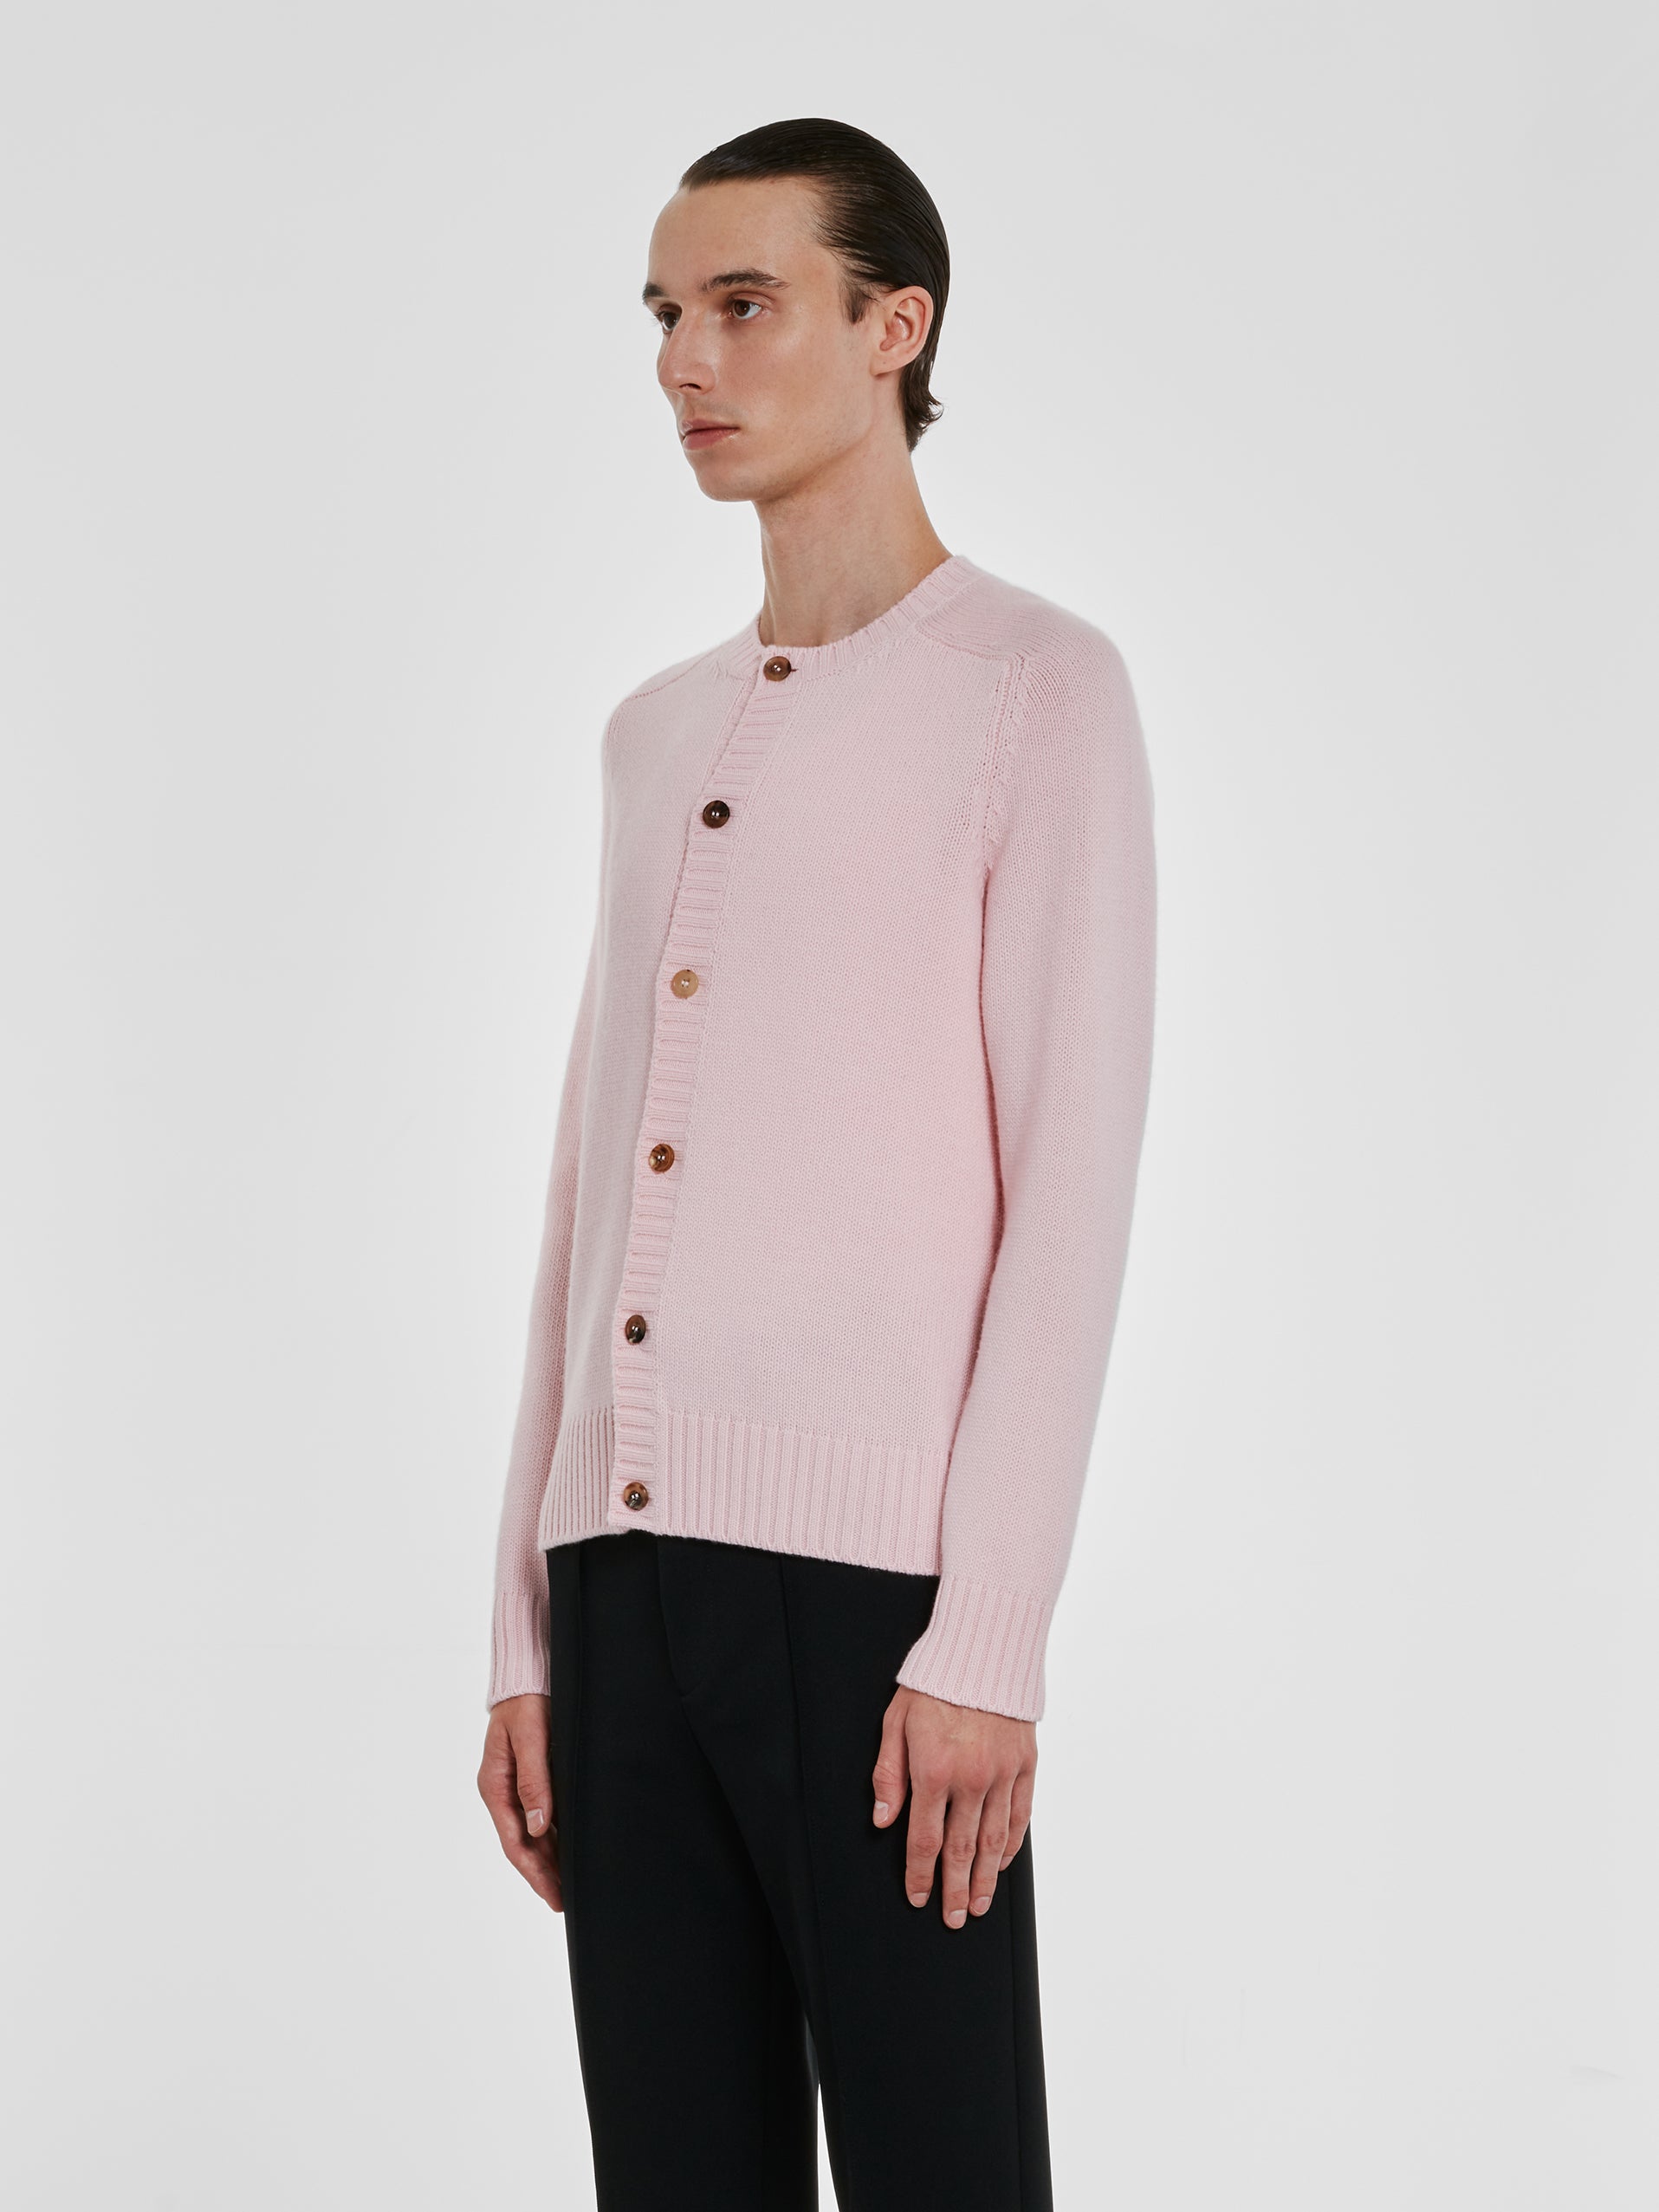 Prada - Men’s Wool and Cashmere Cardigan - (Alabaster Pink) view 2